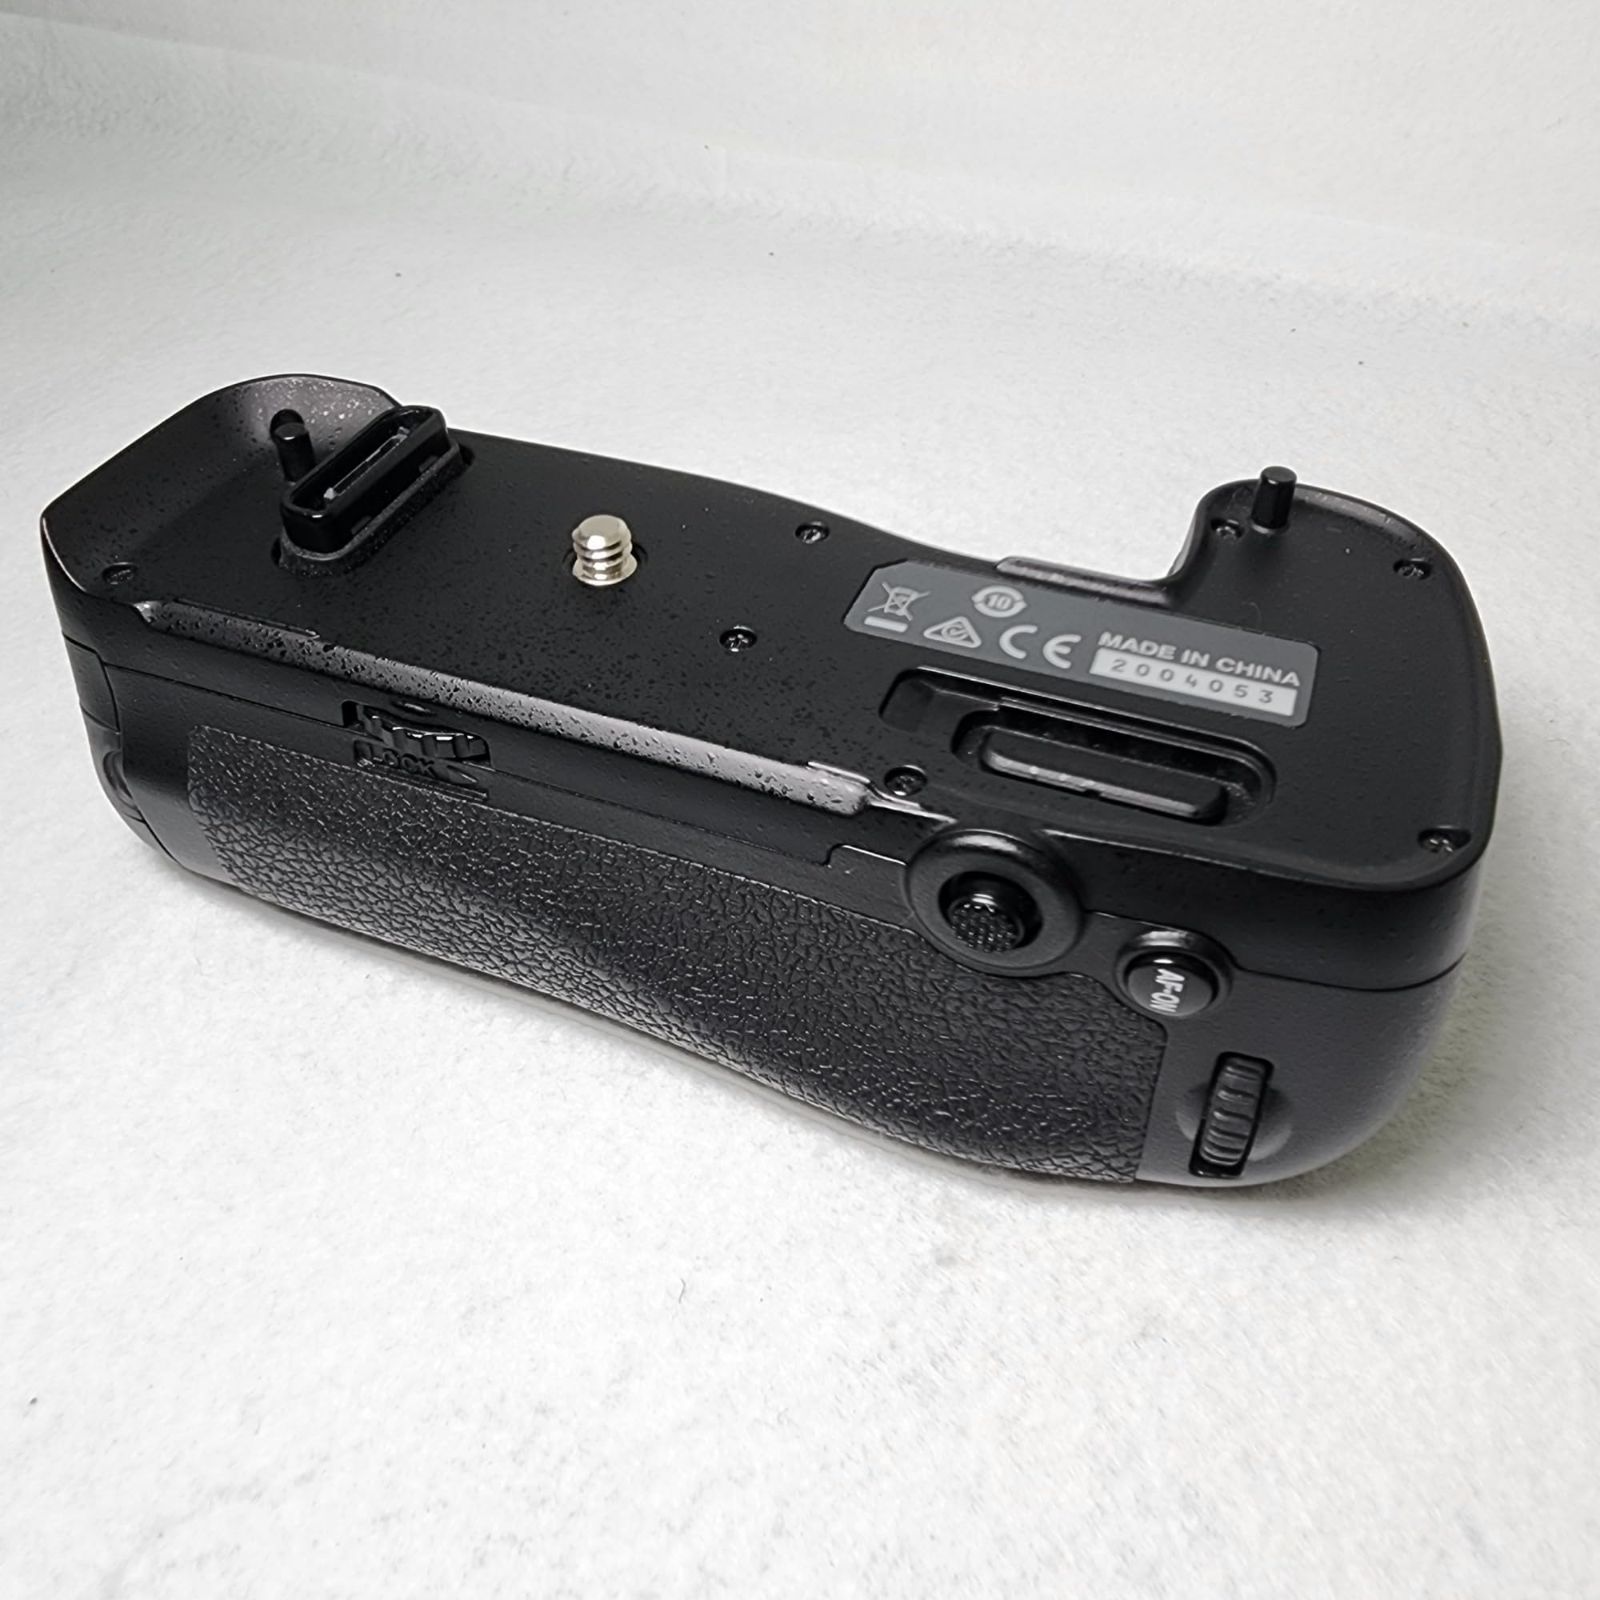 Nikon マルチパワーバッテリーパック MB-D17 - カメラ、光学機器